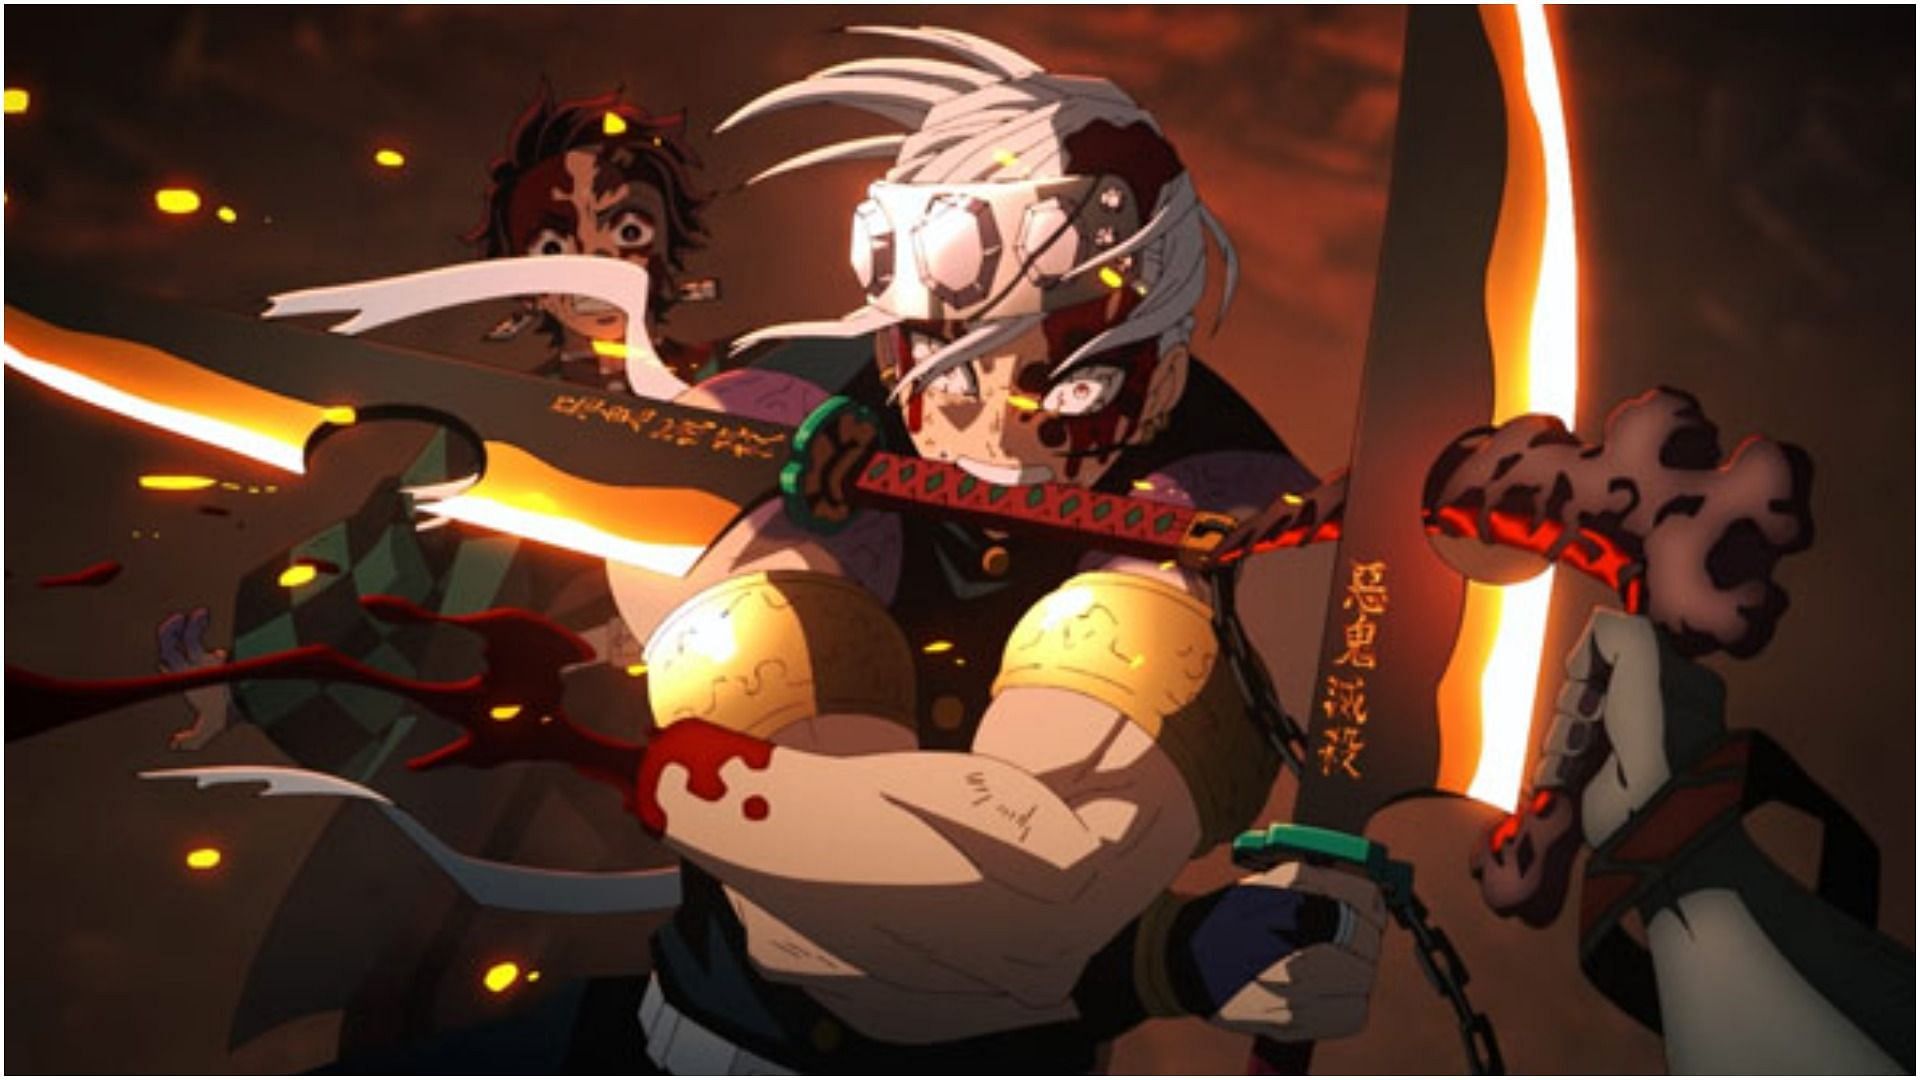 10 strongest swordsmen in anime, ranked